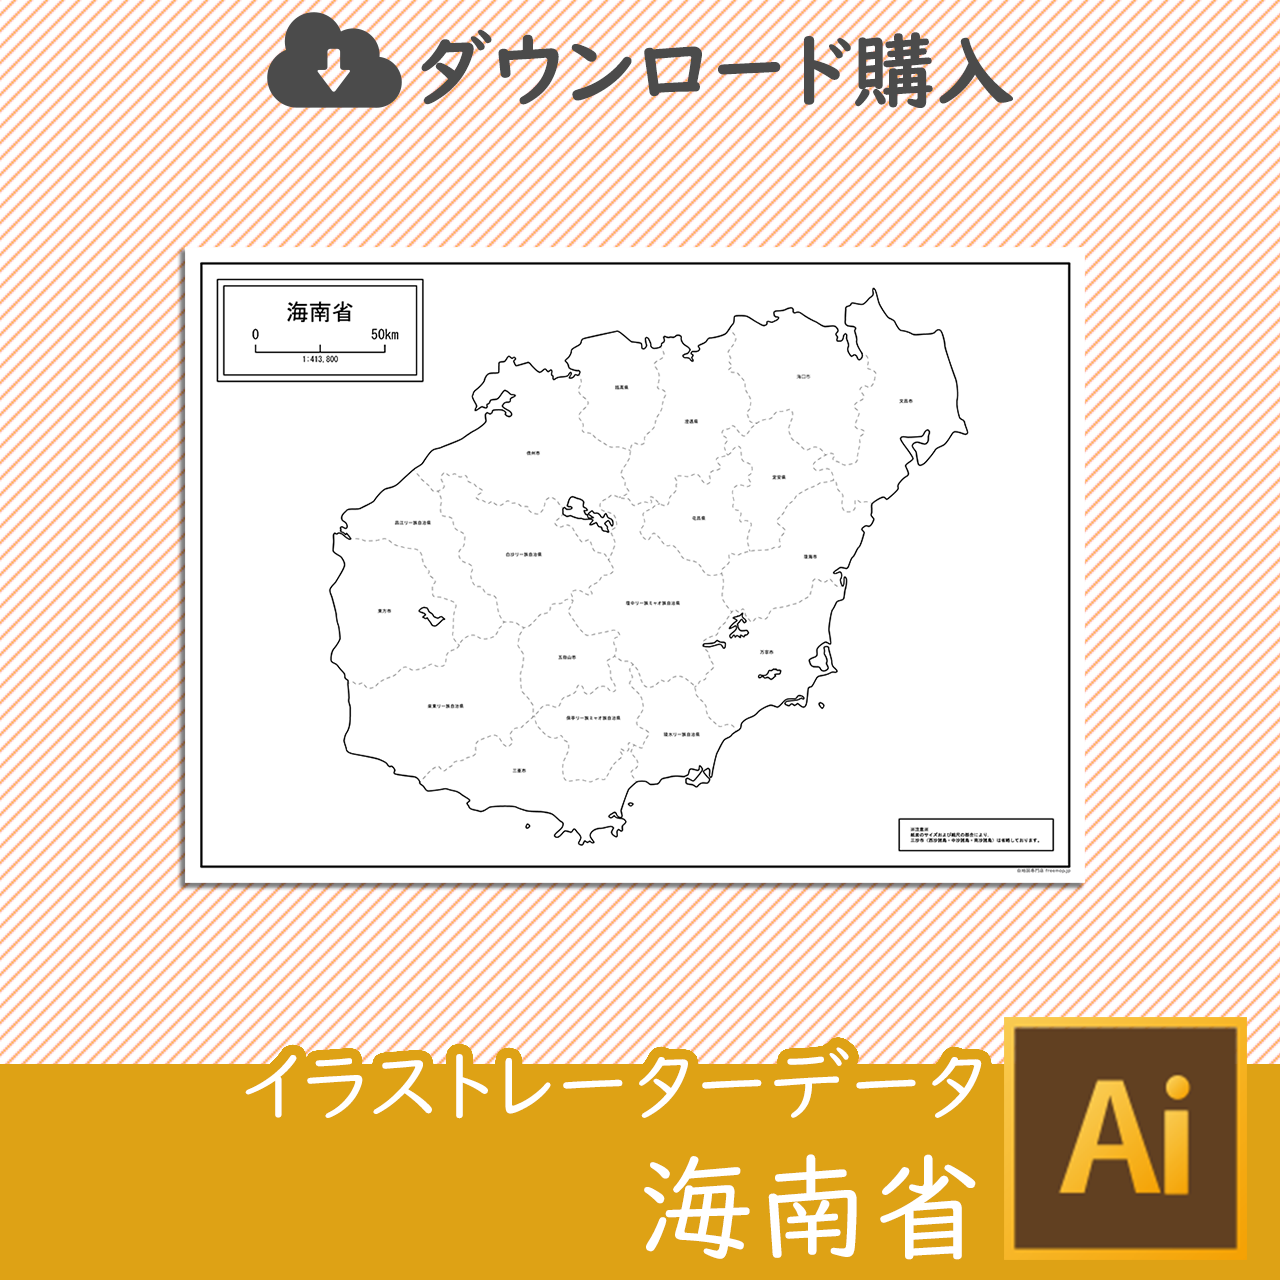 海南省の白地図データのサムネイル画像